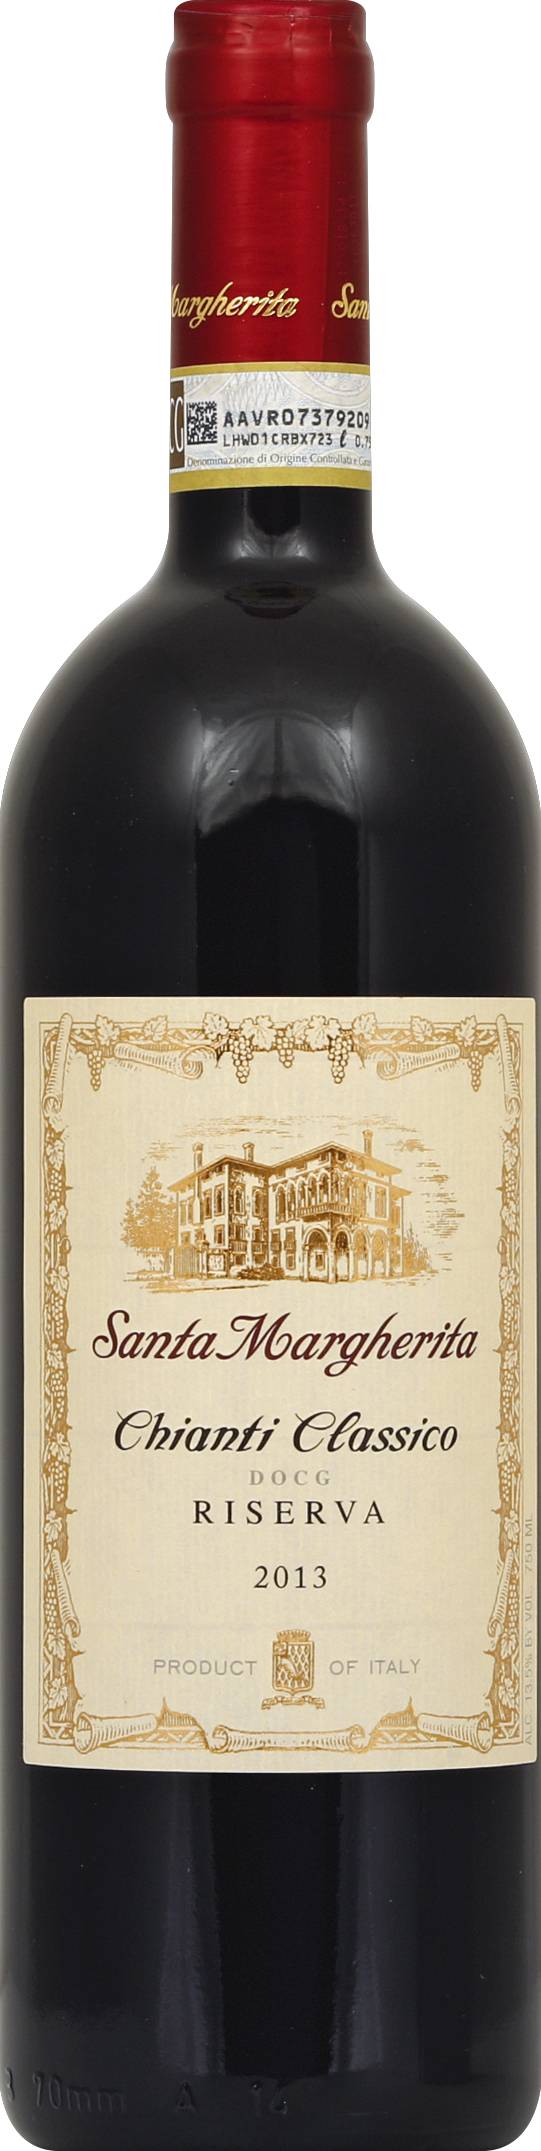 Santa Margherita Chianti Classico Riserva Docg 2013 Red Wine (750 ml)